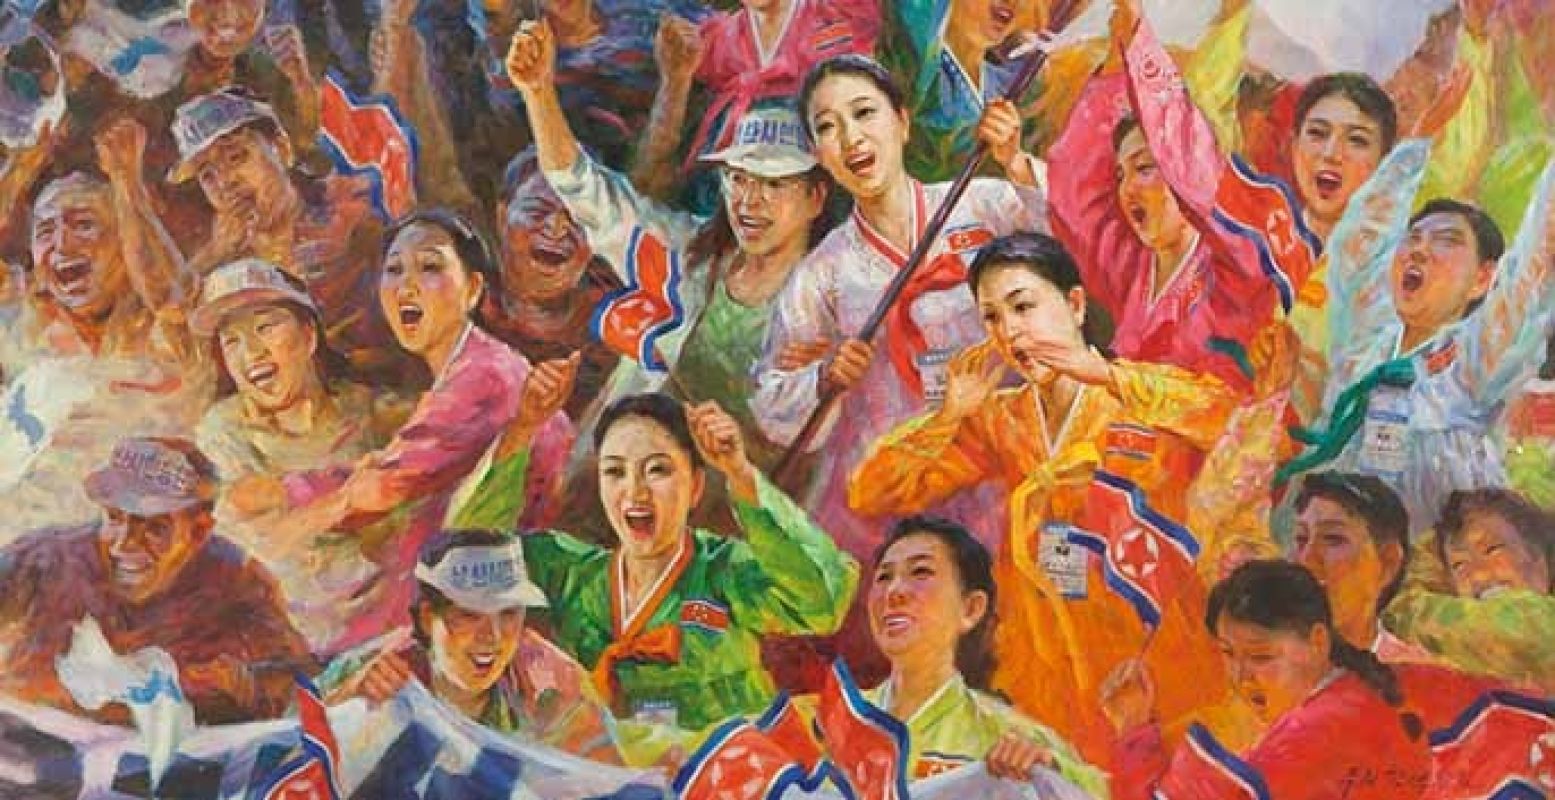 Rim My&#335;ng-il (Nampo City Art Studio), De echo van Pusan, 2003, olieverf op doek. Noord-Koreaanse cheerleaders tijdens Aziatische spelen in Pusan (Zuid-Korea), collectie Ronald de Groen